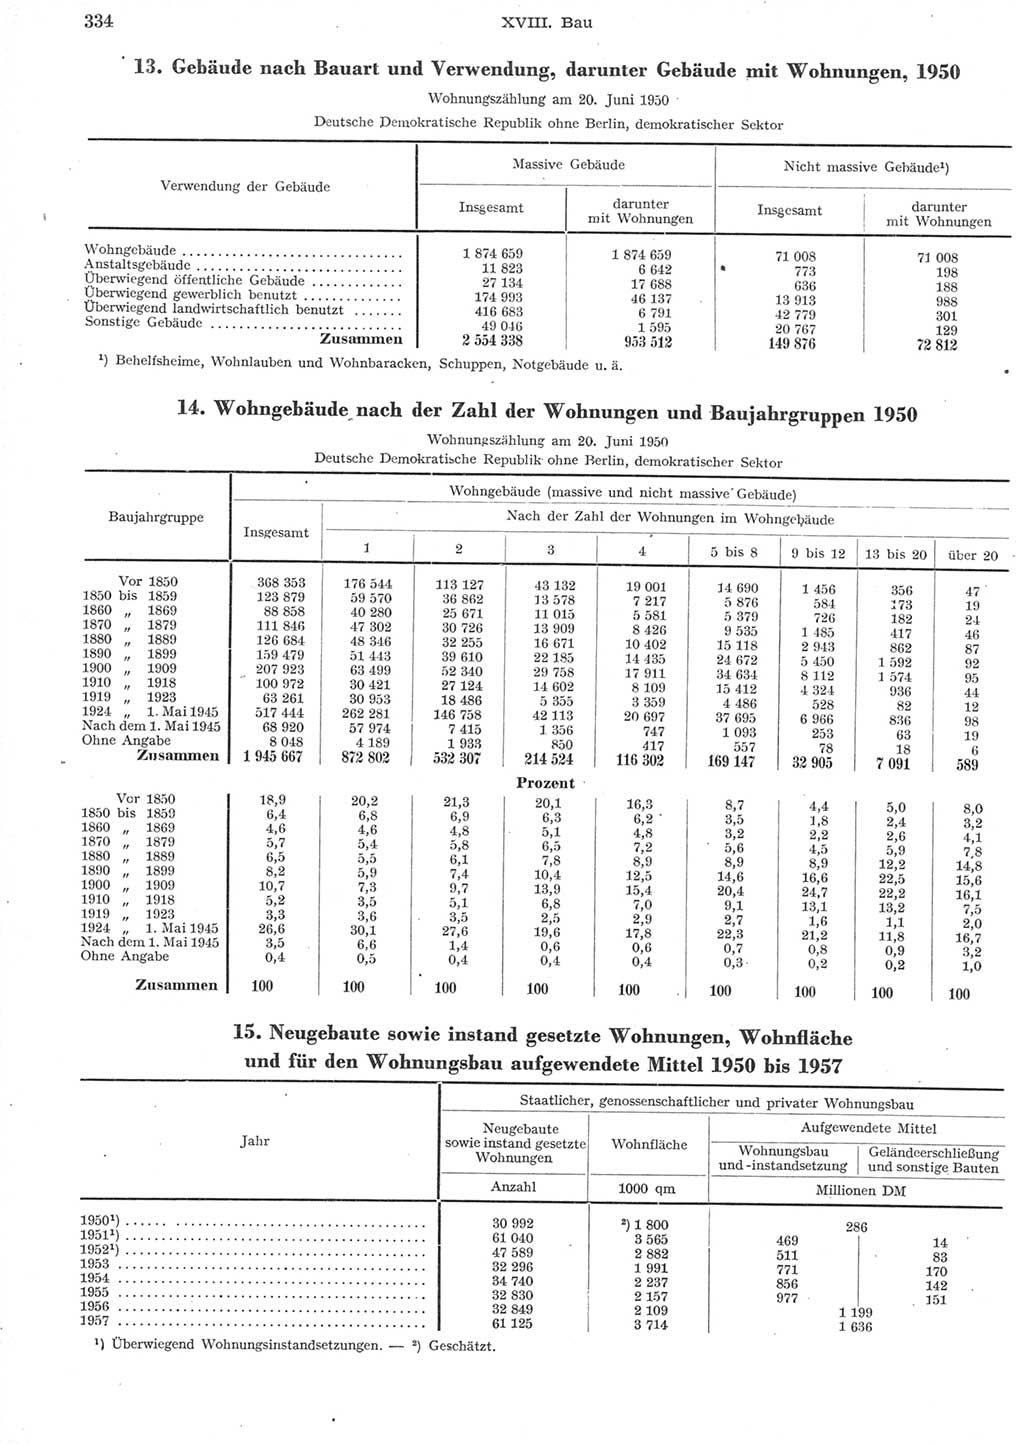 Statistisches Jahrbuch der Deutschen Demokratischen Republik (DDR) 1957, Seite 334 (Stat. Jb. DDR 1957, S. 334)